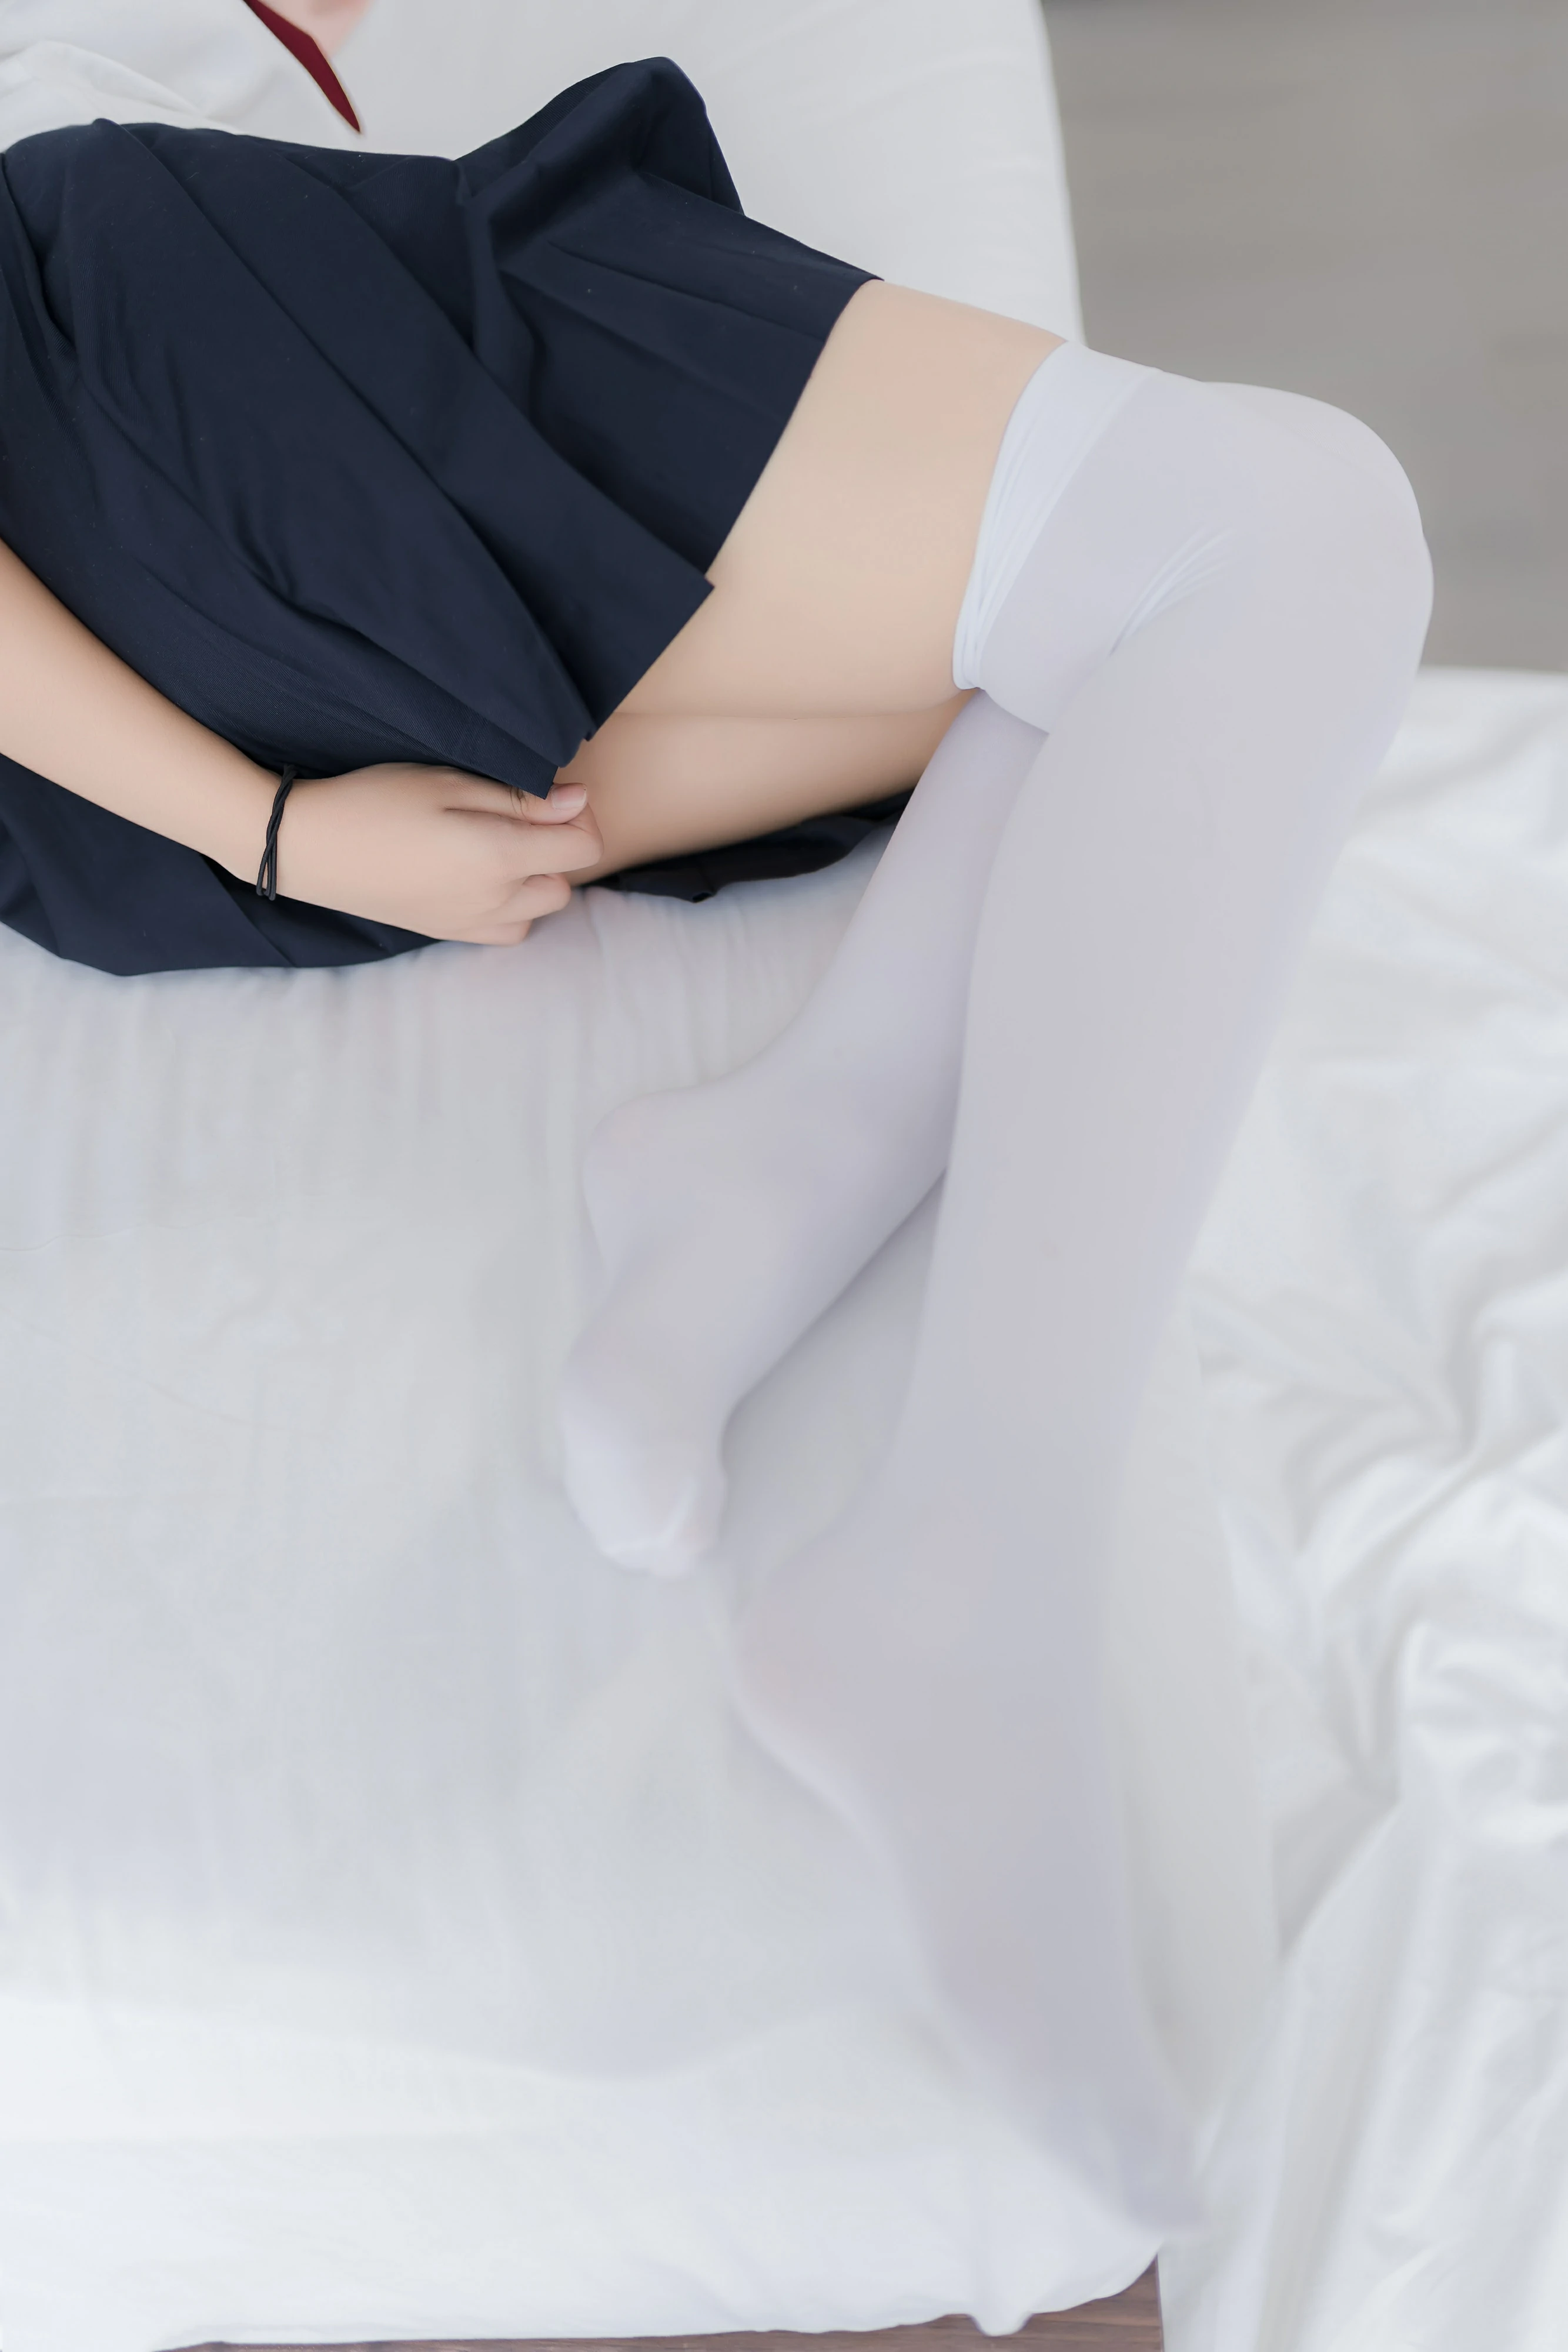 [喵糖映画]NO.002 JK白丝 清纯小萝莉 日本高中女生制服与黑色短裙加白色丝袜美腿性感私房写真集,